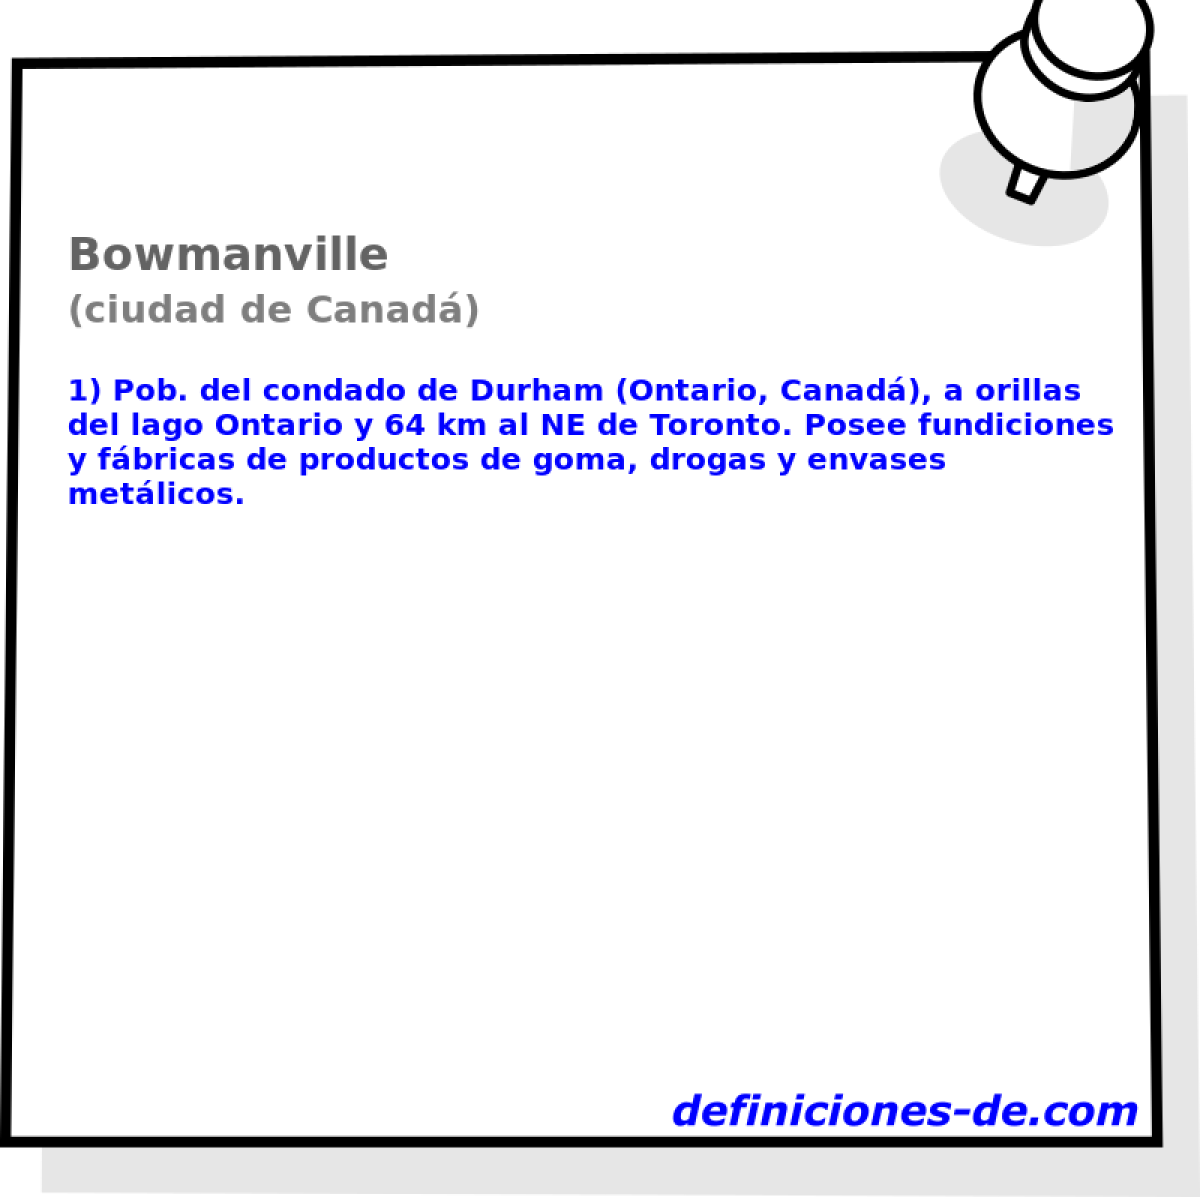 Bowmanville (ciudad de Canad)